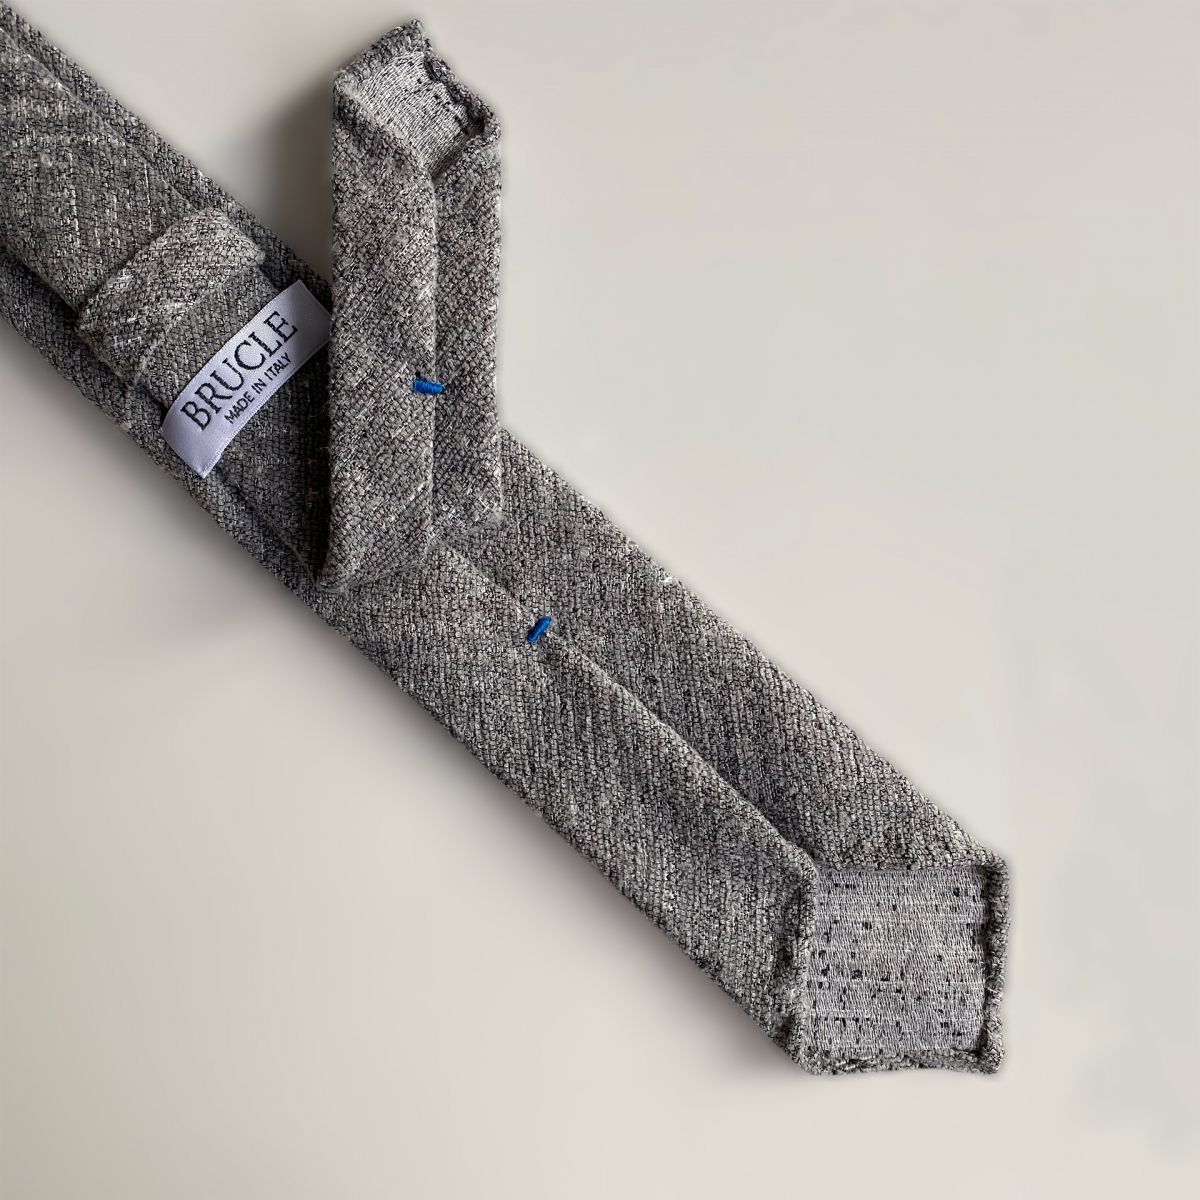 BRUCLE Unlined silk wool necktie tartan grey